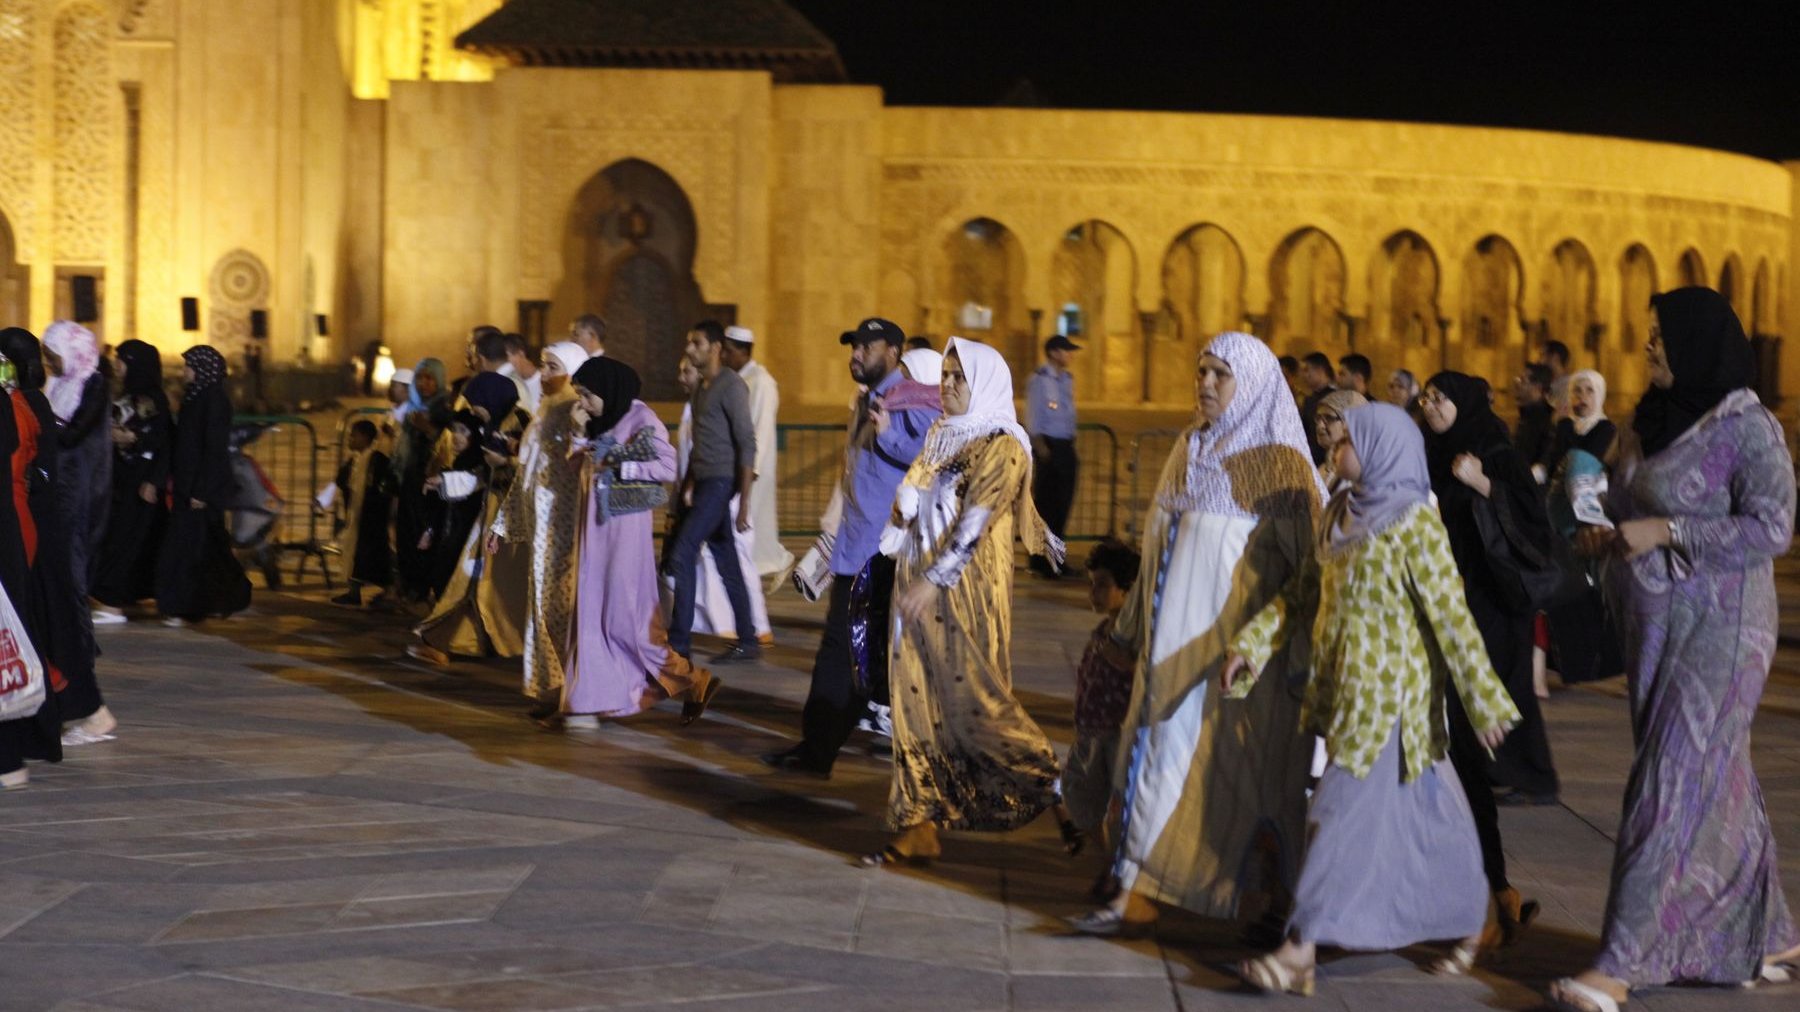 Tapis de prières sous le bras , Les fidèles n'ont pas cessé d'affluer vers la mosquée Hassan II ce samedi soir.
